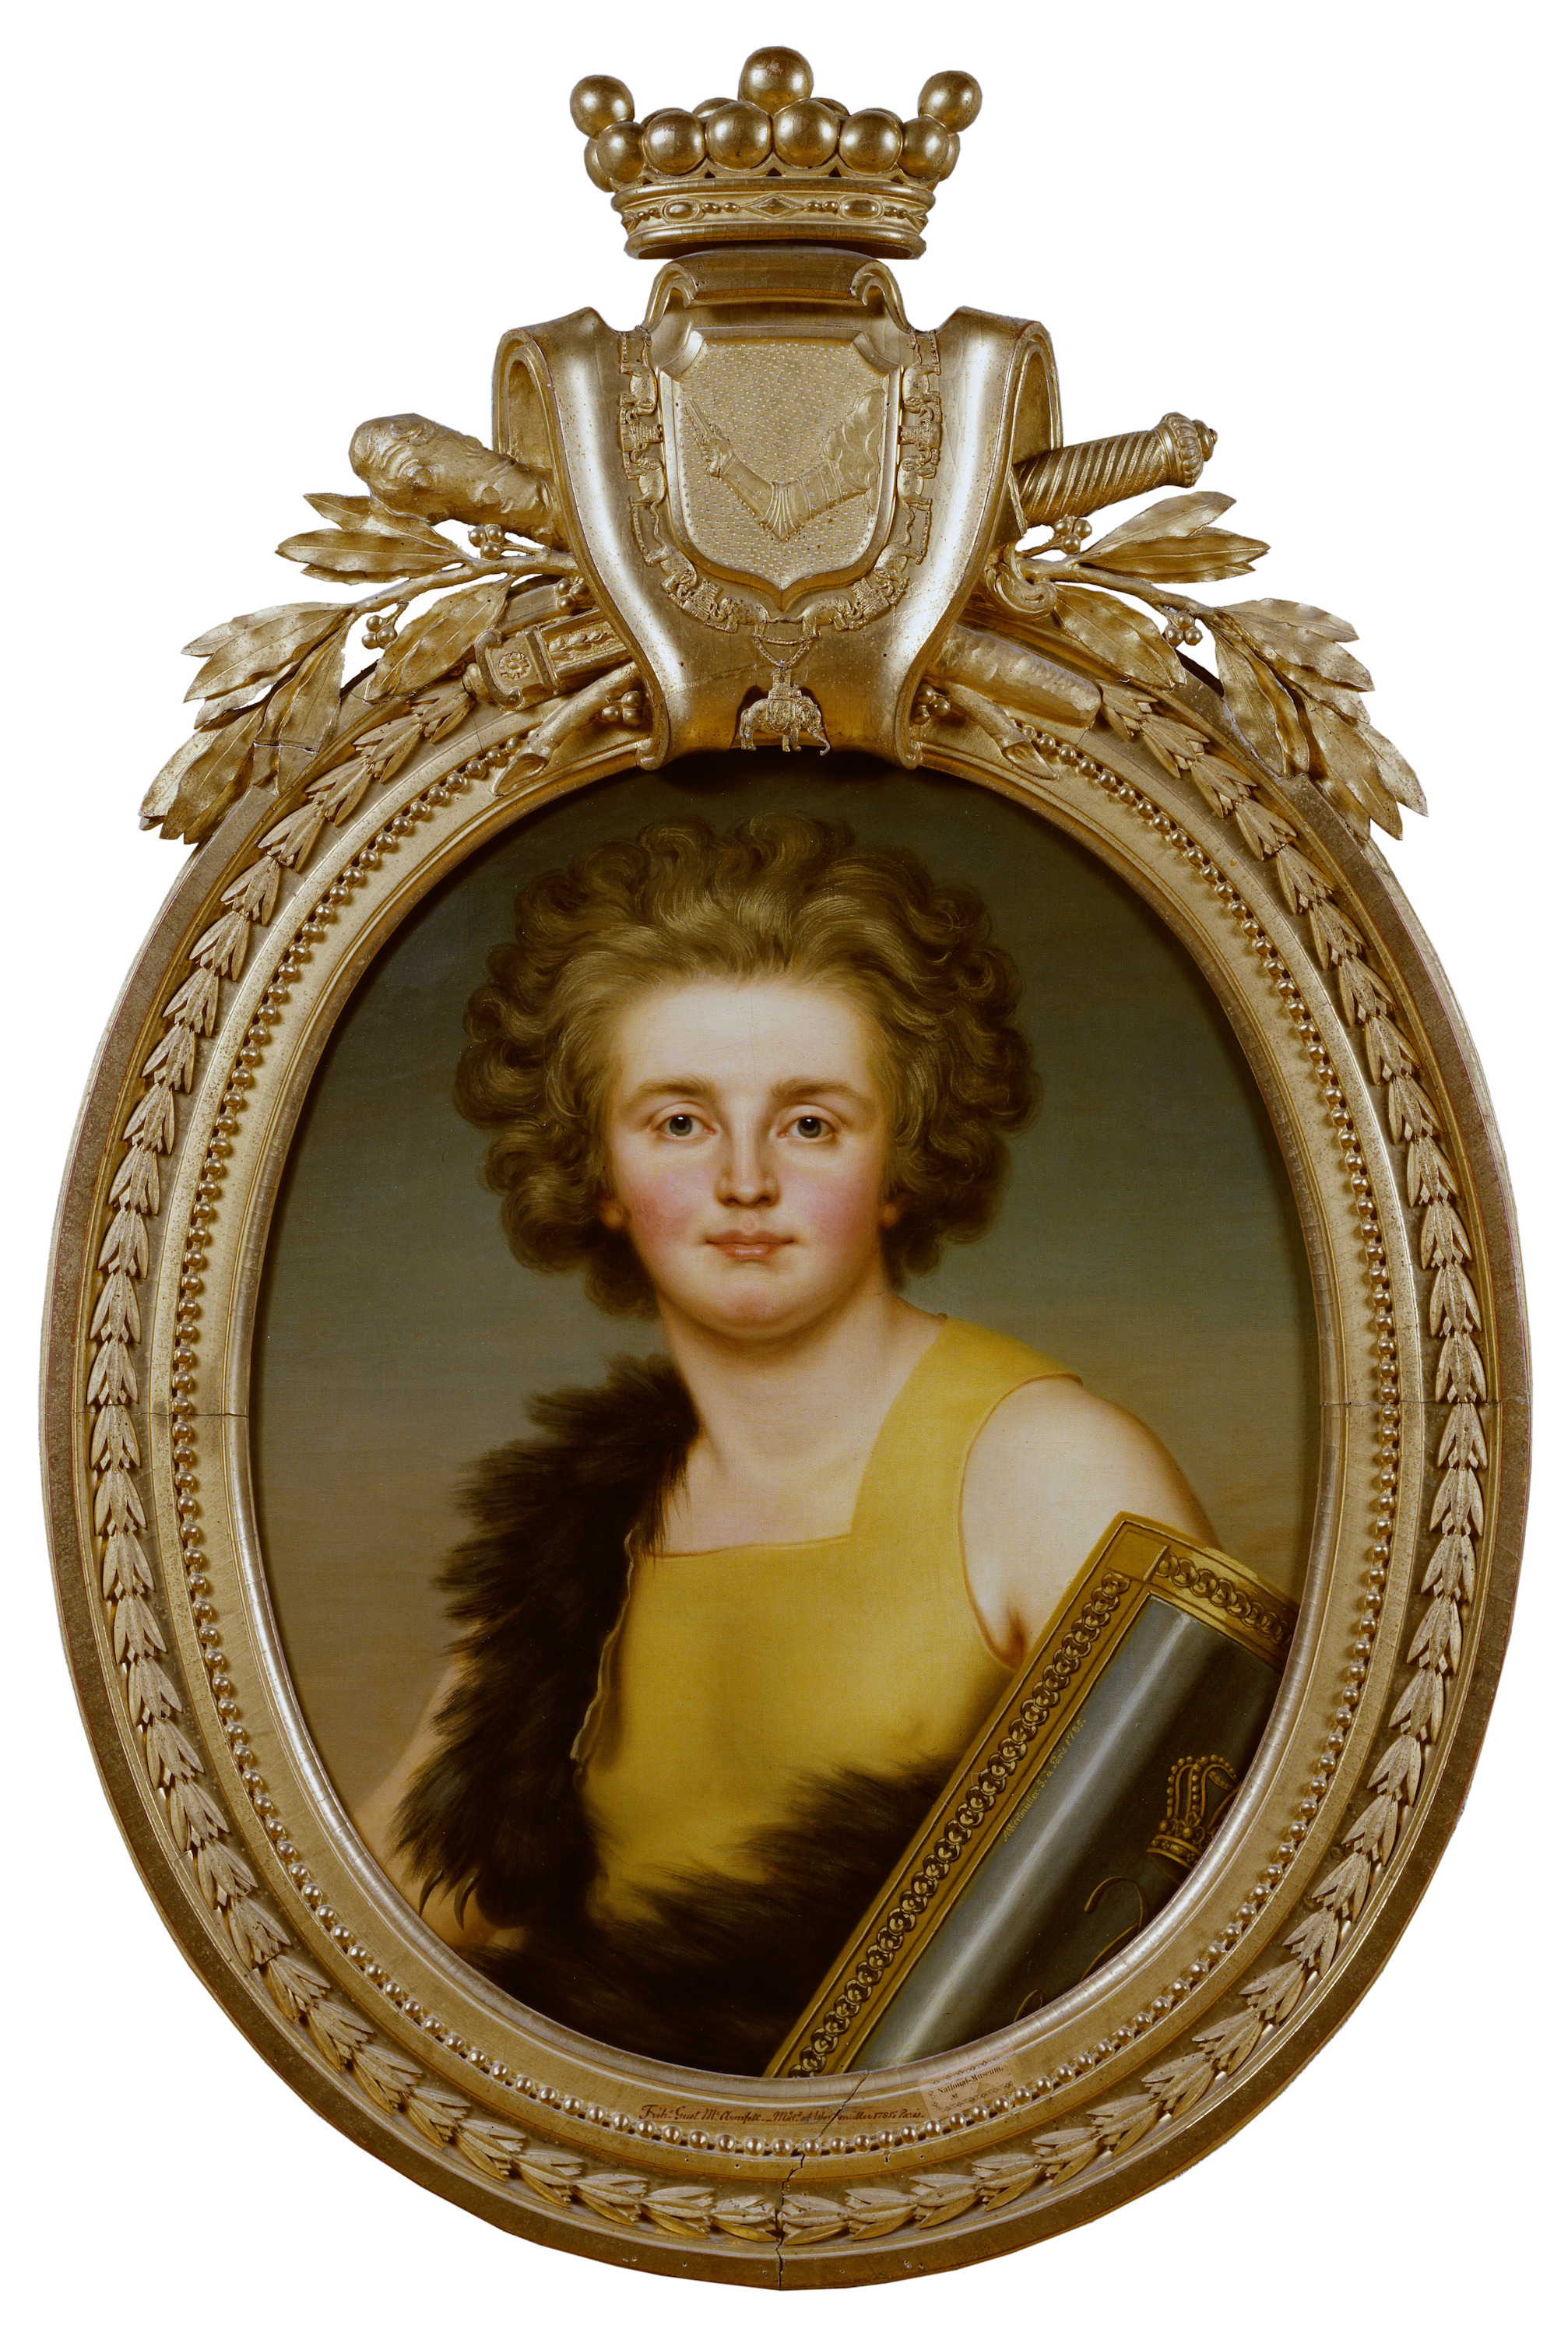 Gustaf Mauritz Armfelt by Adolf Ulrik Wertmüller - Signiert 1785 - 73 x 58,5 cm Nationalmuseum